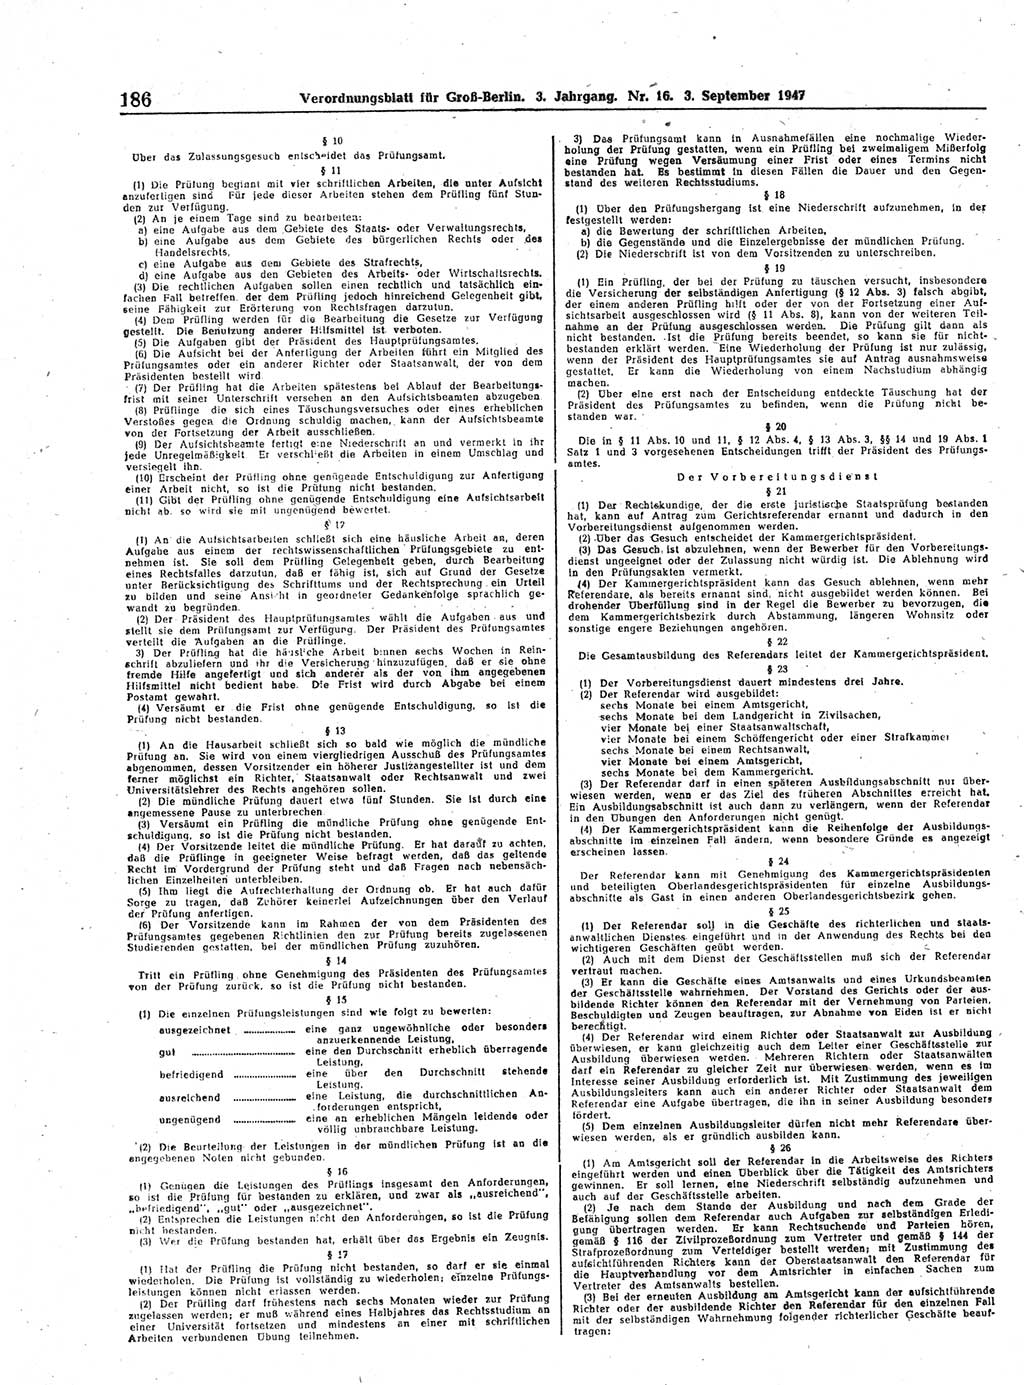 Verordnungsblatt (VOBl.) für Groß-Berlin 1947, Seite 186 (VOBl. Bln. 1947, S. 186)